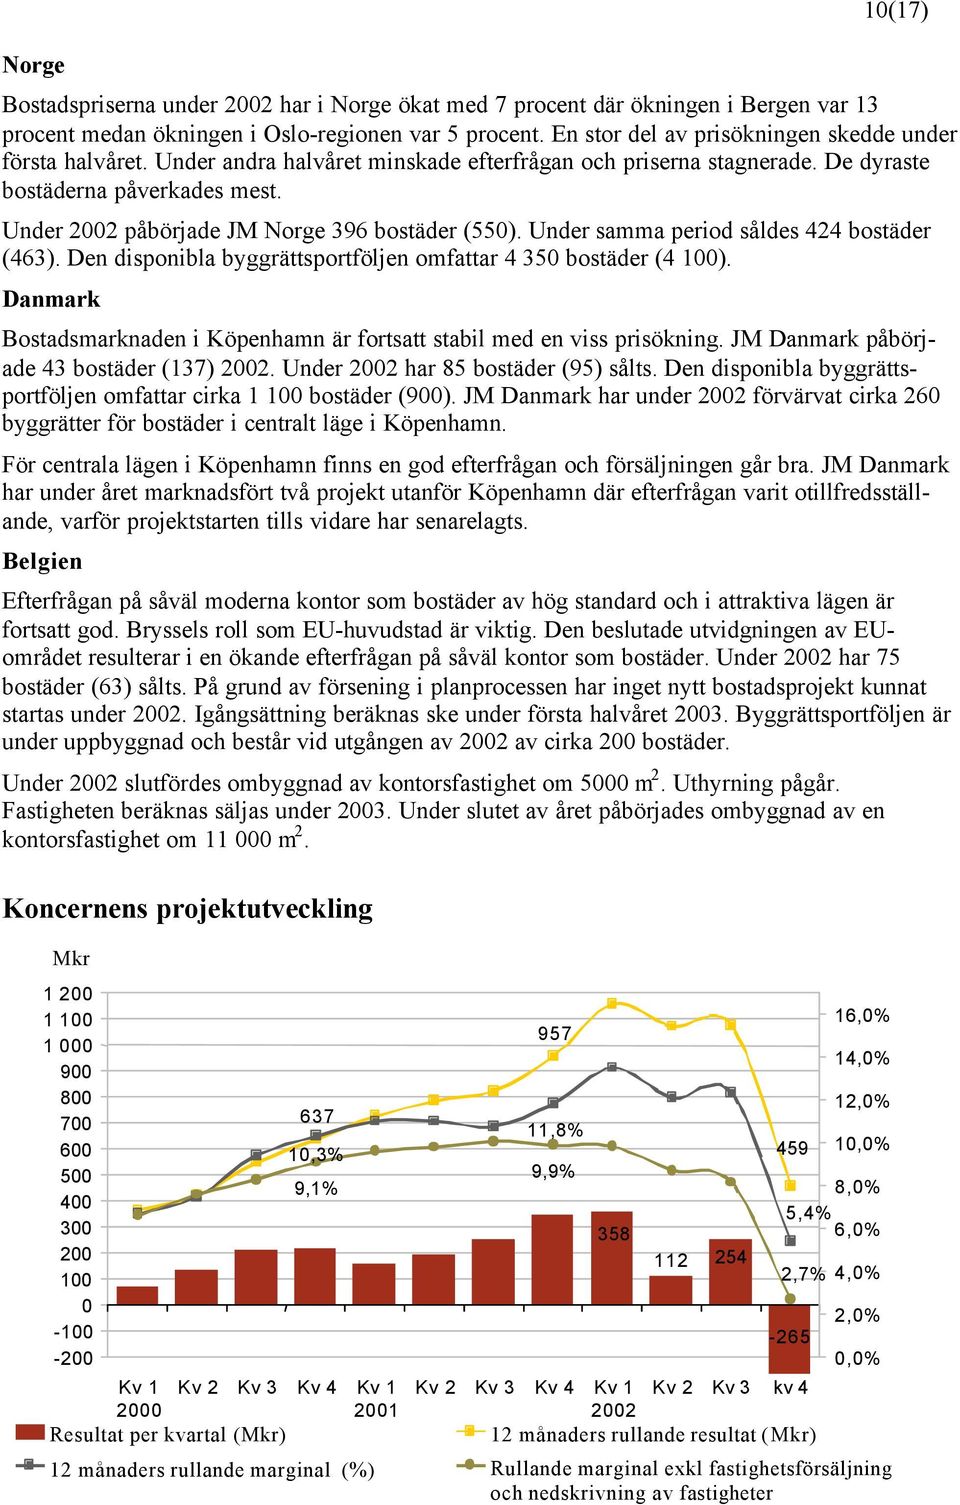 Under 2002 påbörjade JM Norge 396 bostäder (550). Under samma period såldes 424 bostäder (463). Den disponibla byggrättsportföljen omfattar 4 350 bostäder (4 100).